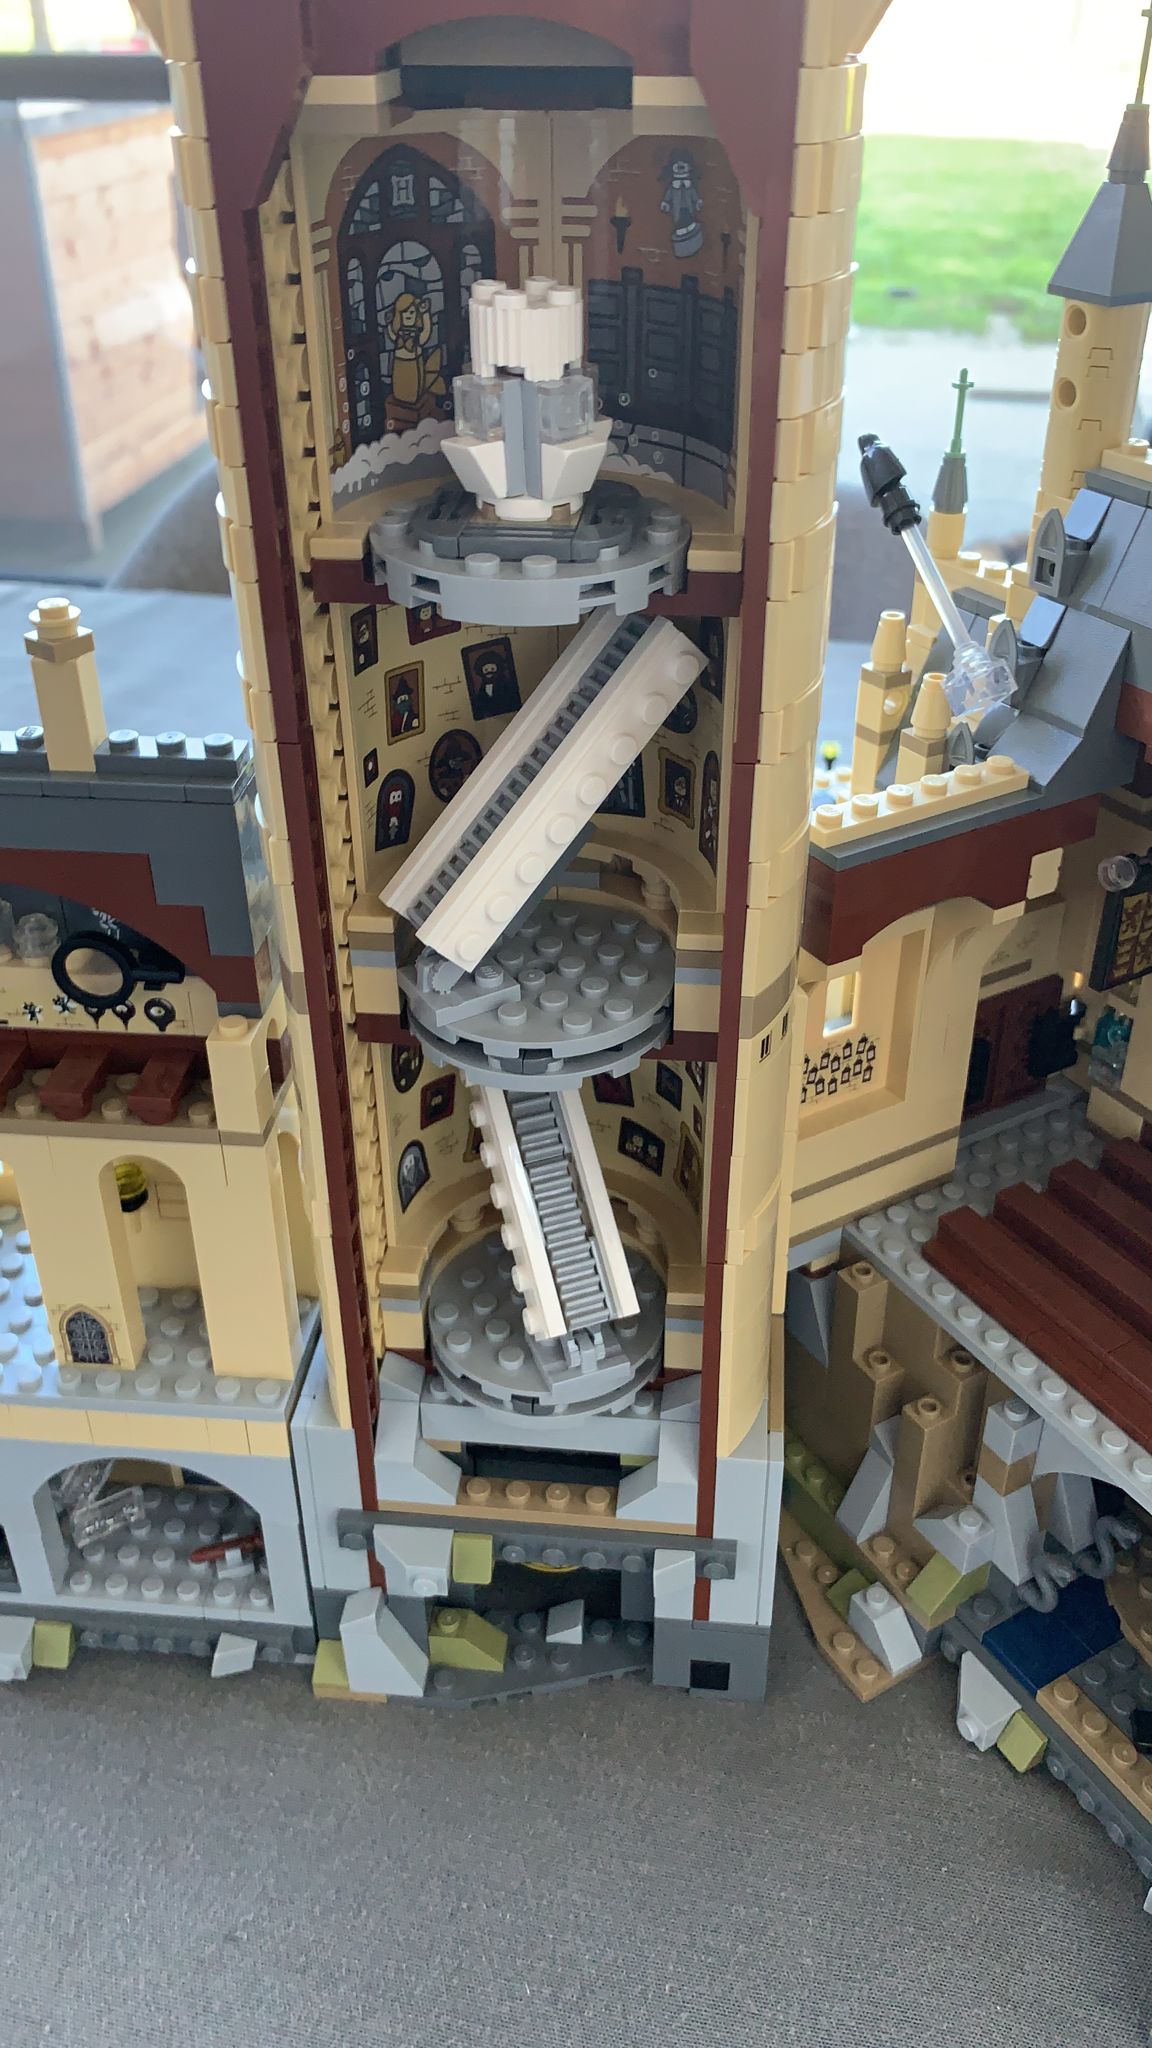 Le Château de Poudlard Harry Potter LEGO 71043 - 6020 Pièces